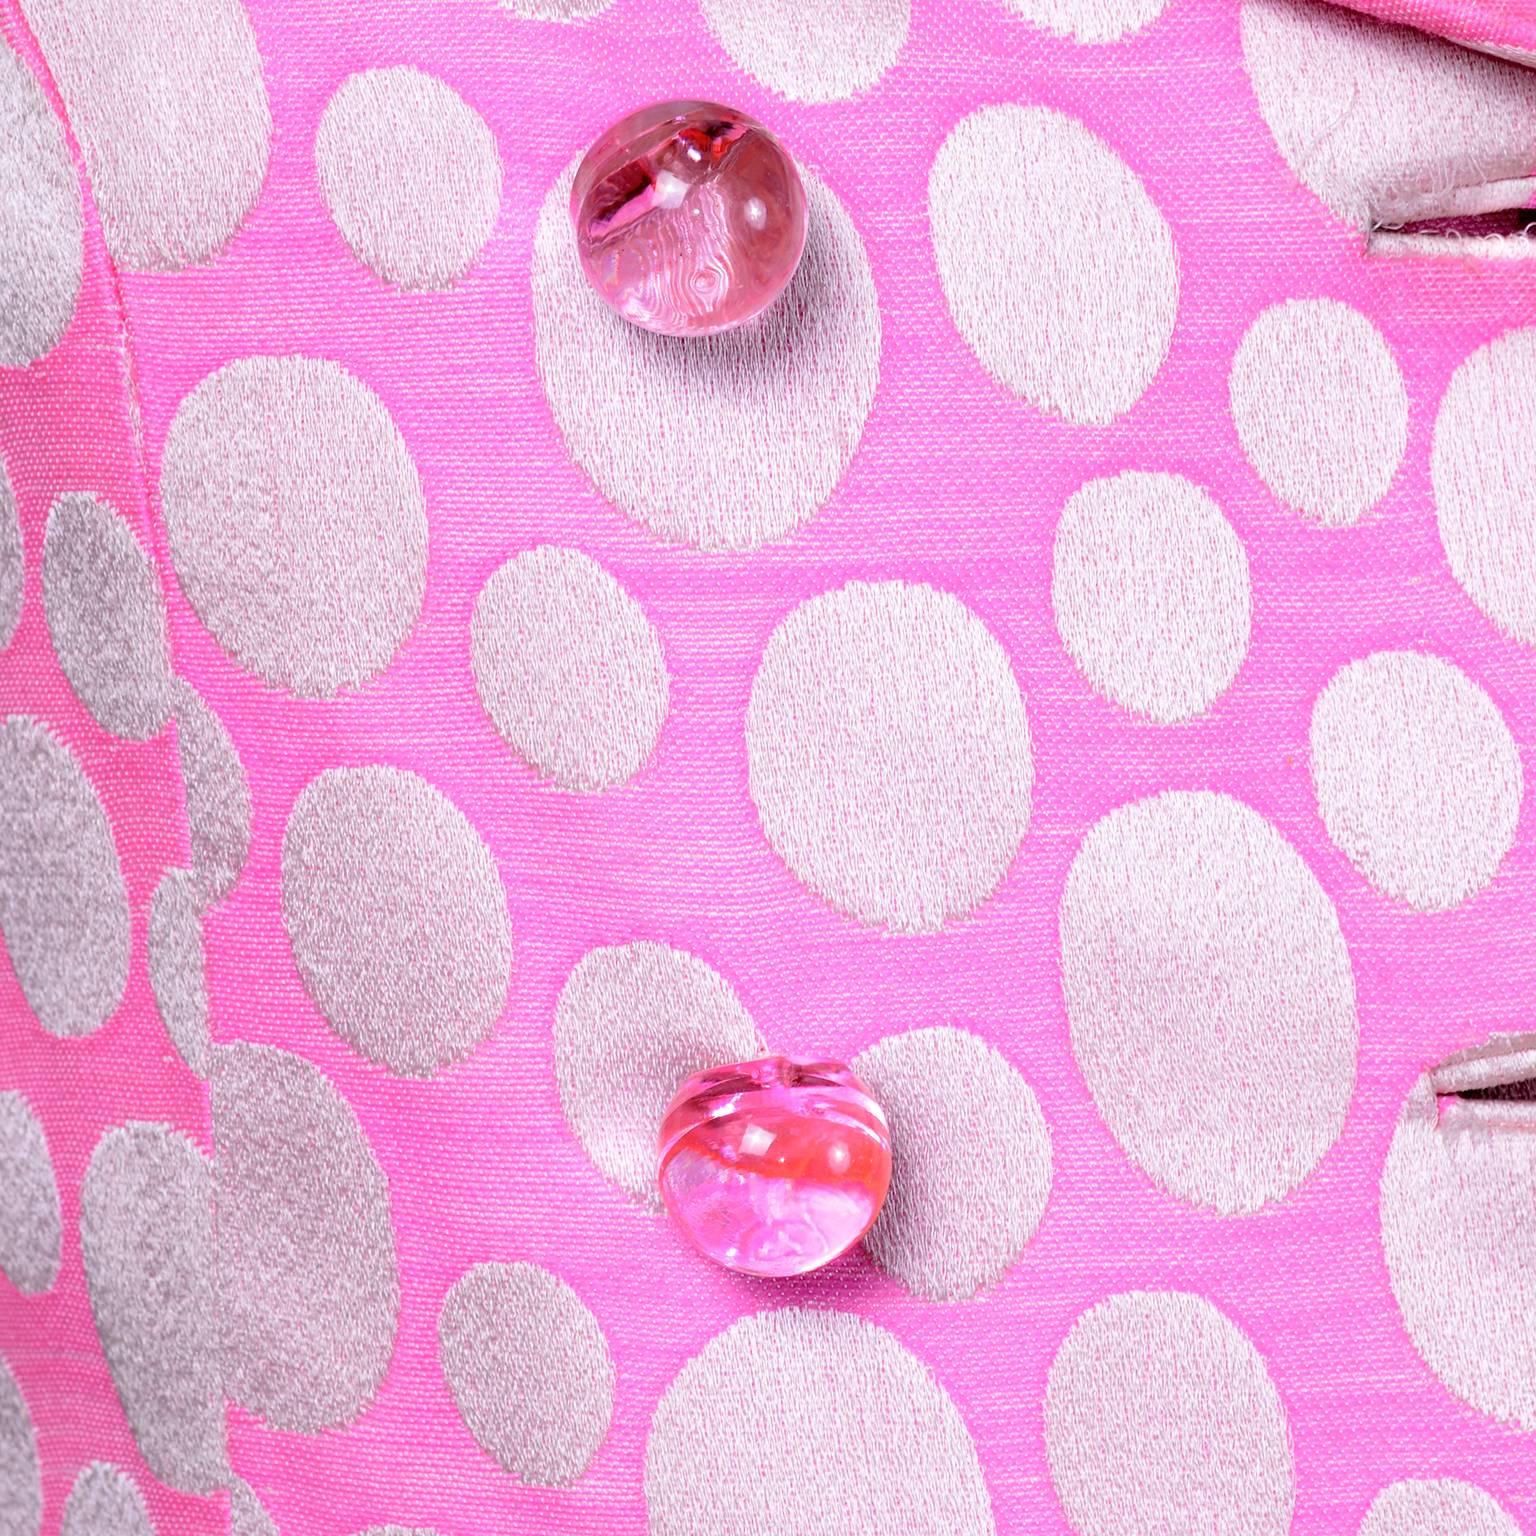 1960s Mod Vintage Pink Polka Dot Sleeveless Dress & Coat Suit Crest Room 1